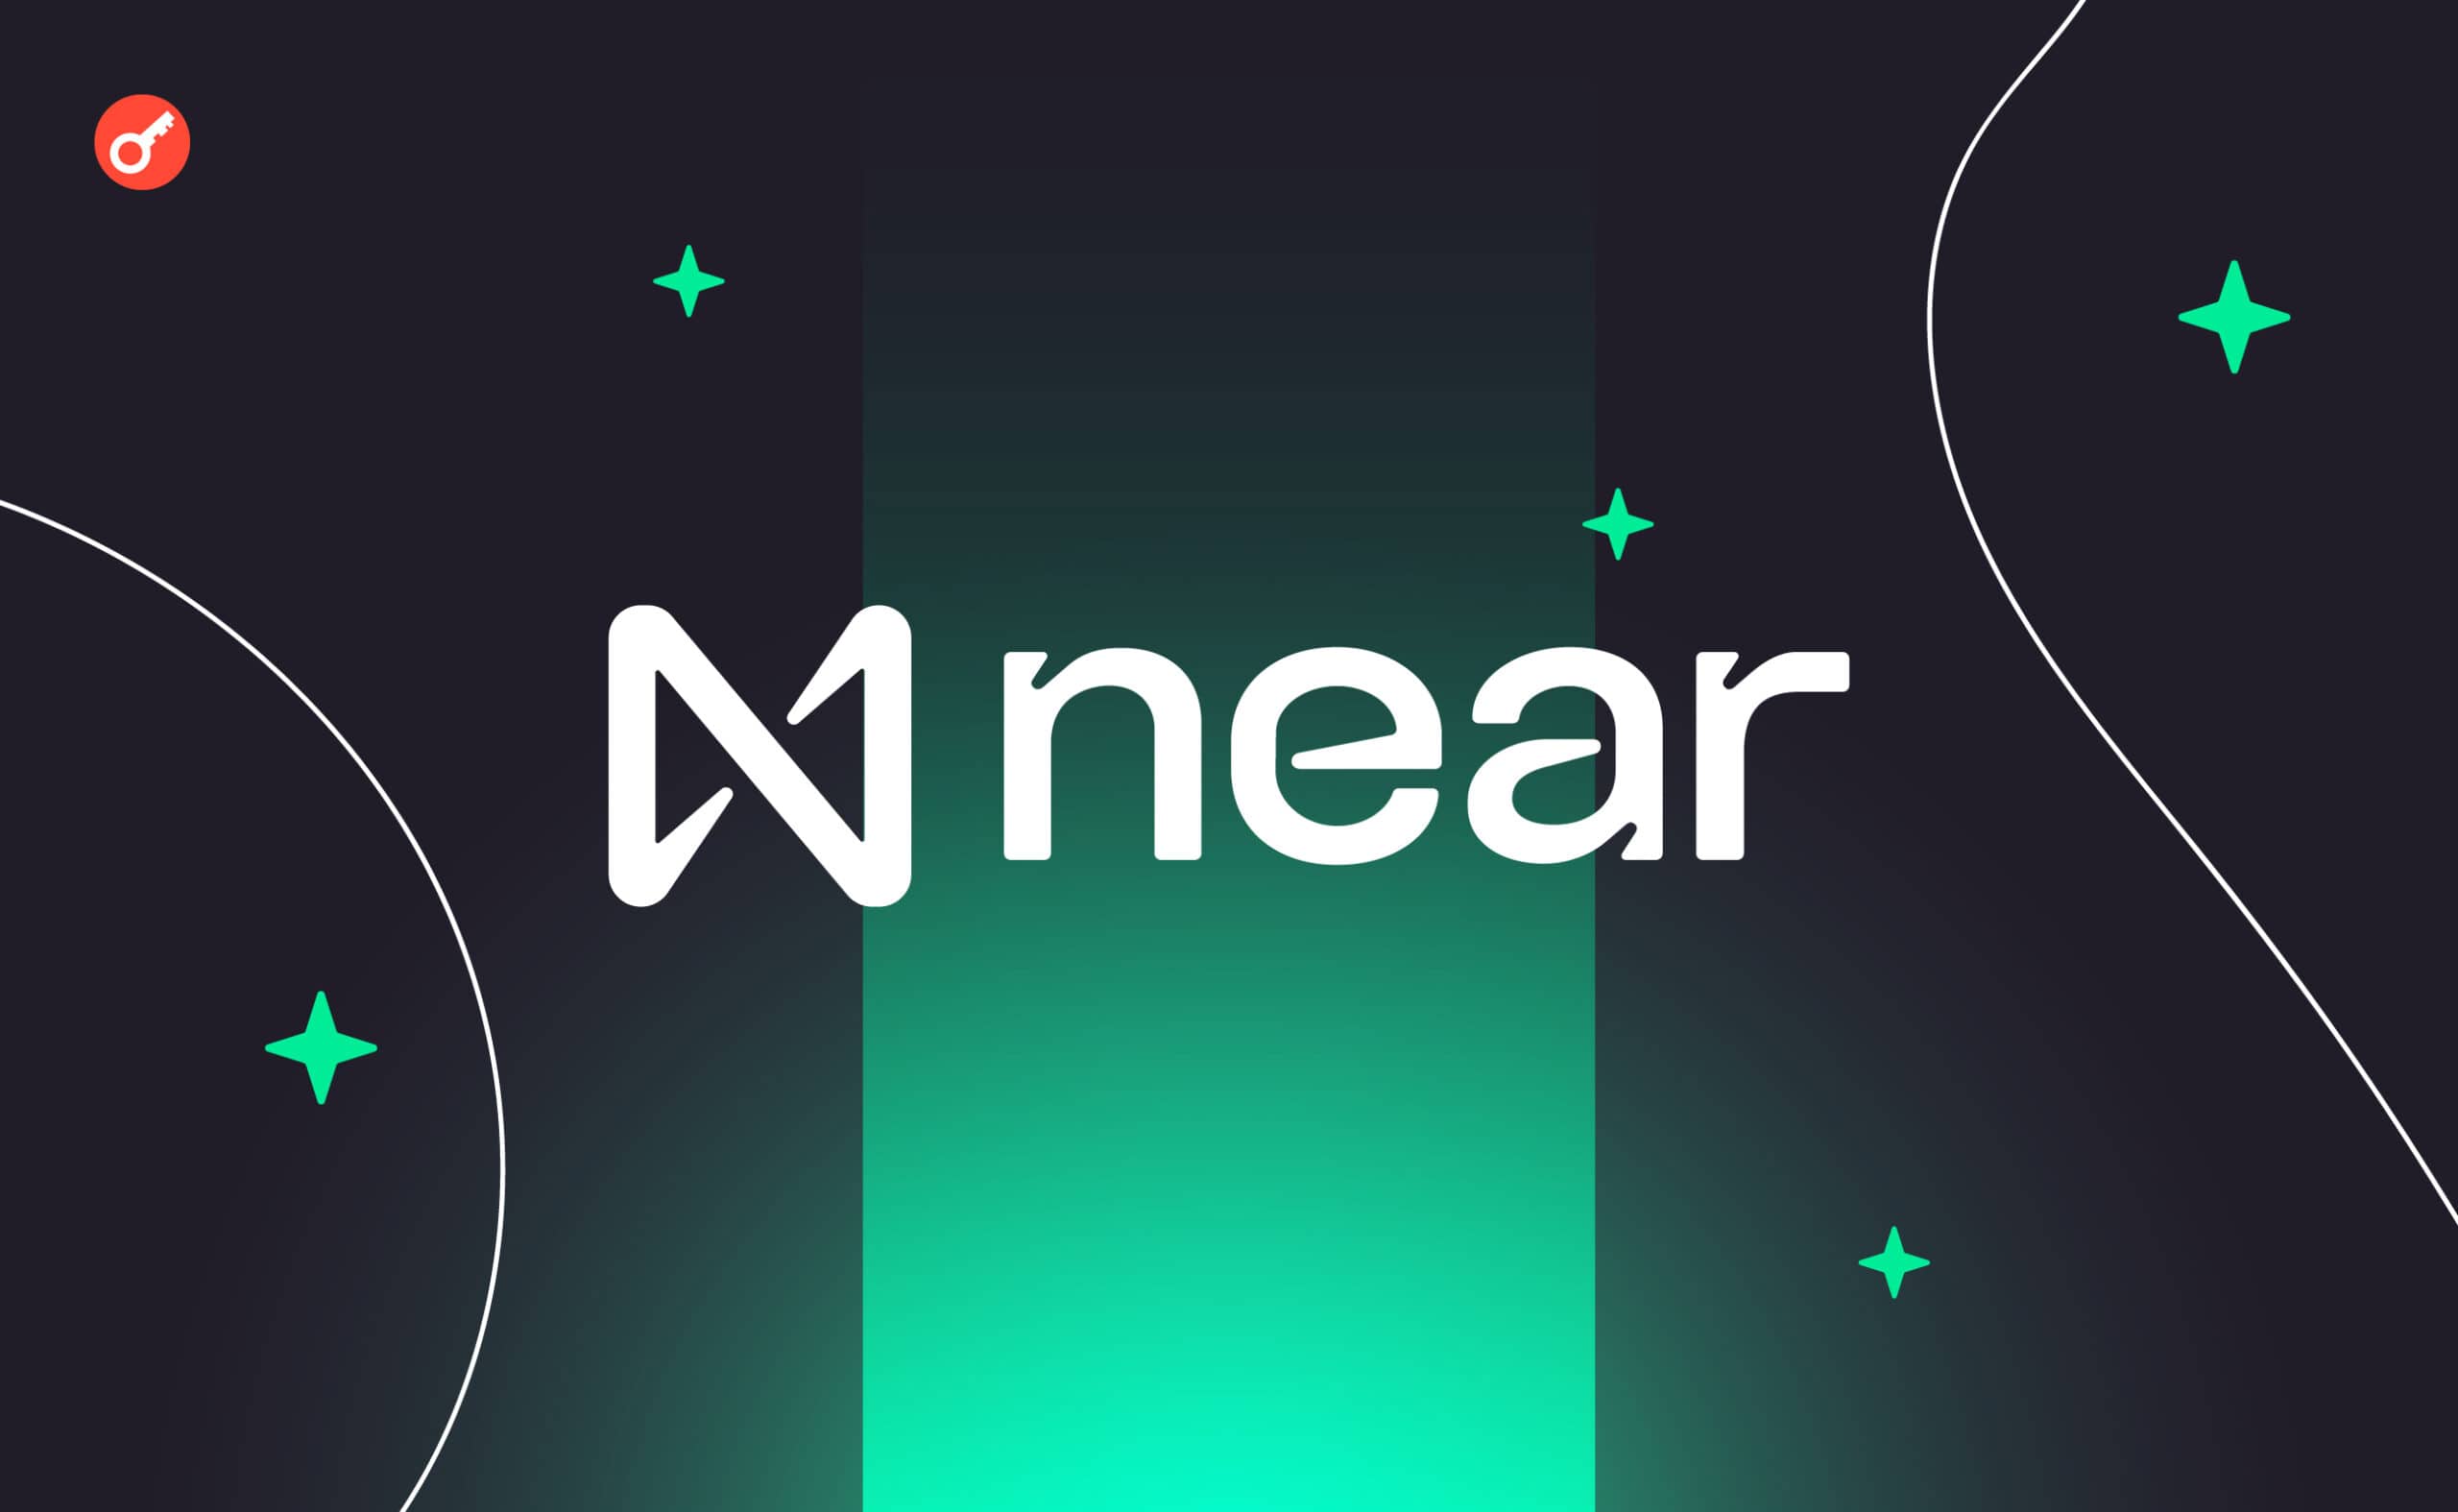 NEAR Foundation запустил протокол Chain Signatures. Заглавный коллаж новости.